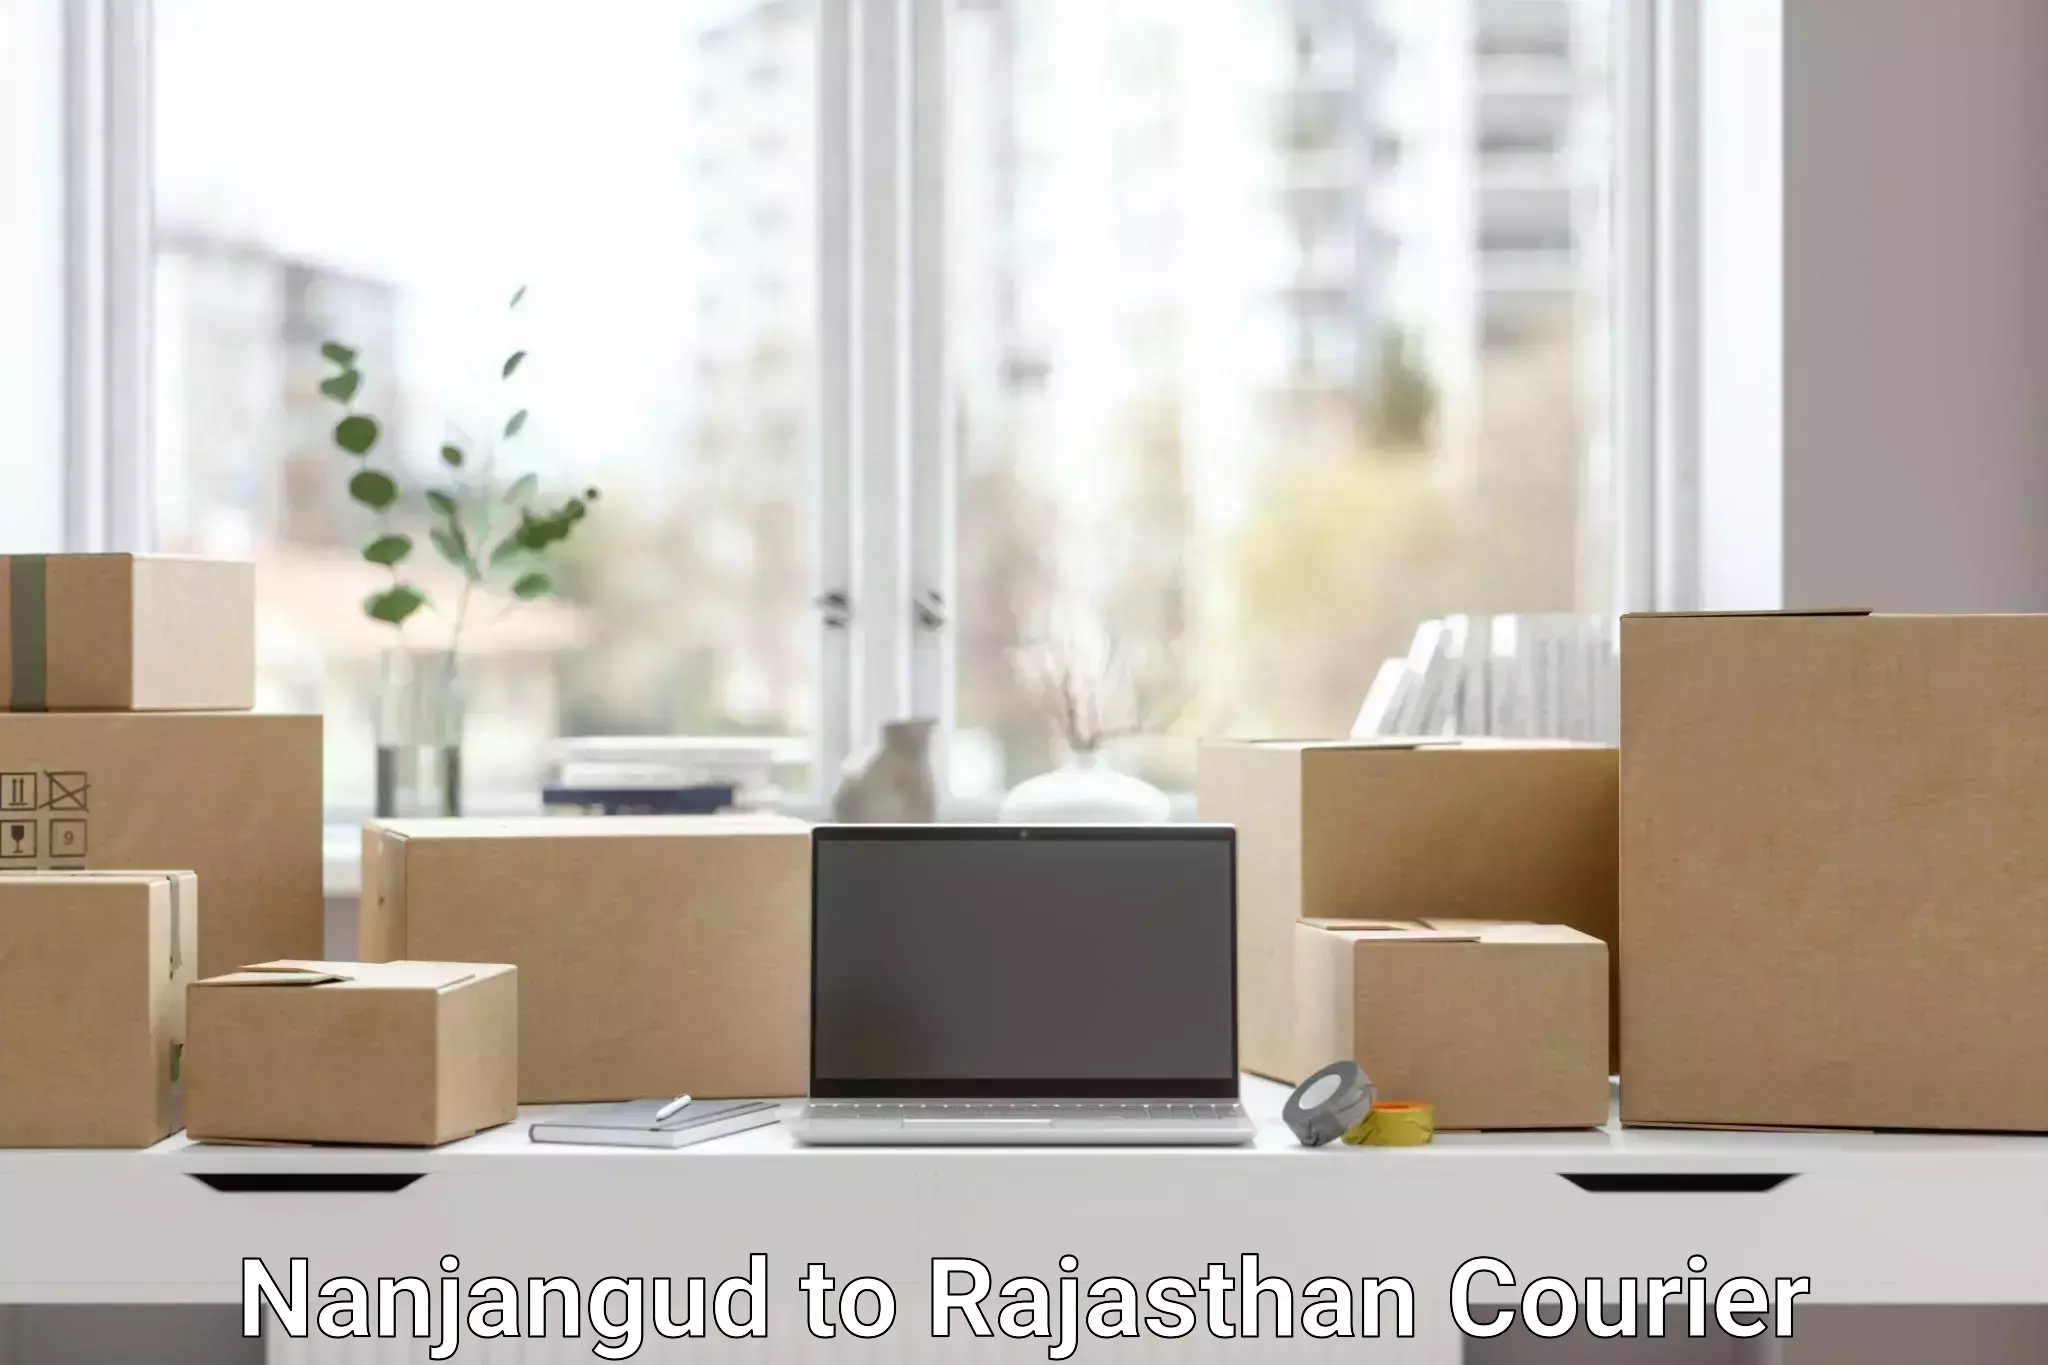 Affordable parcel service Nanjangud to Rajasthan